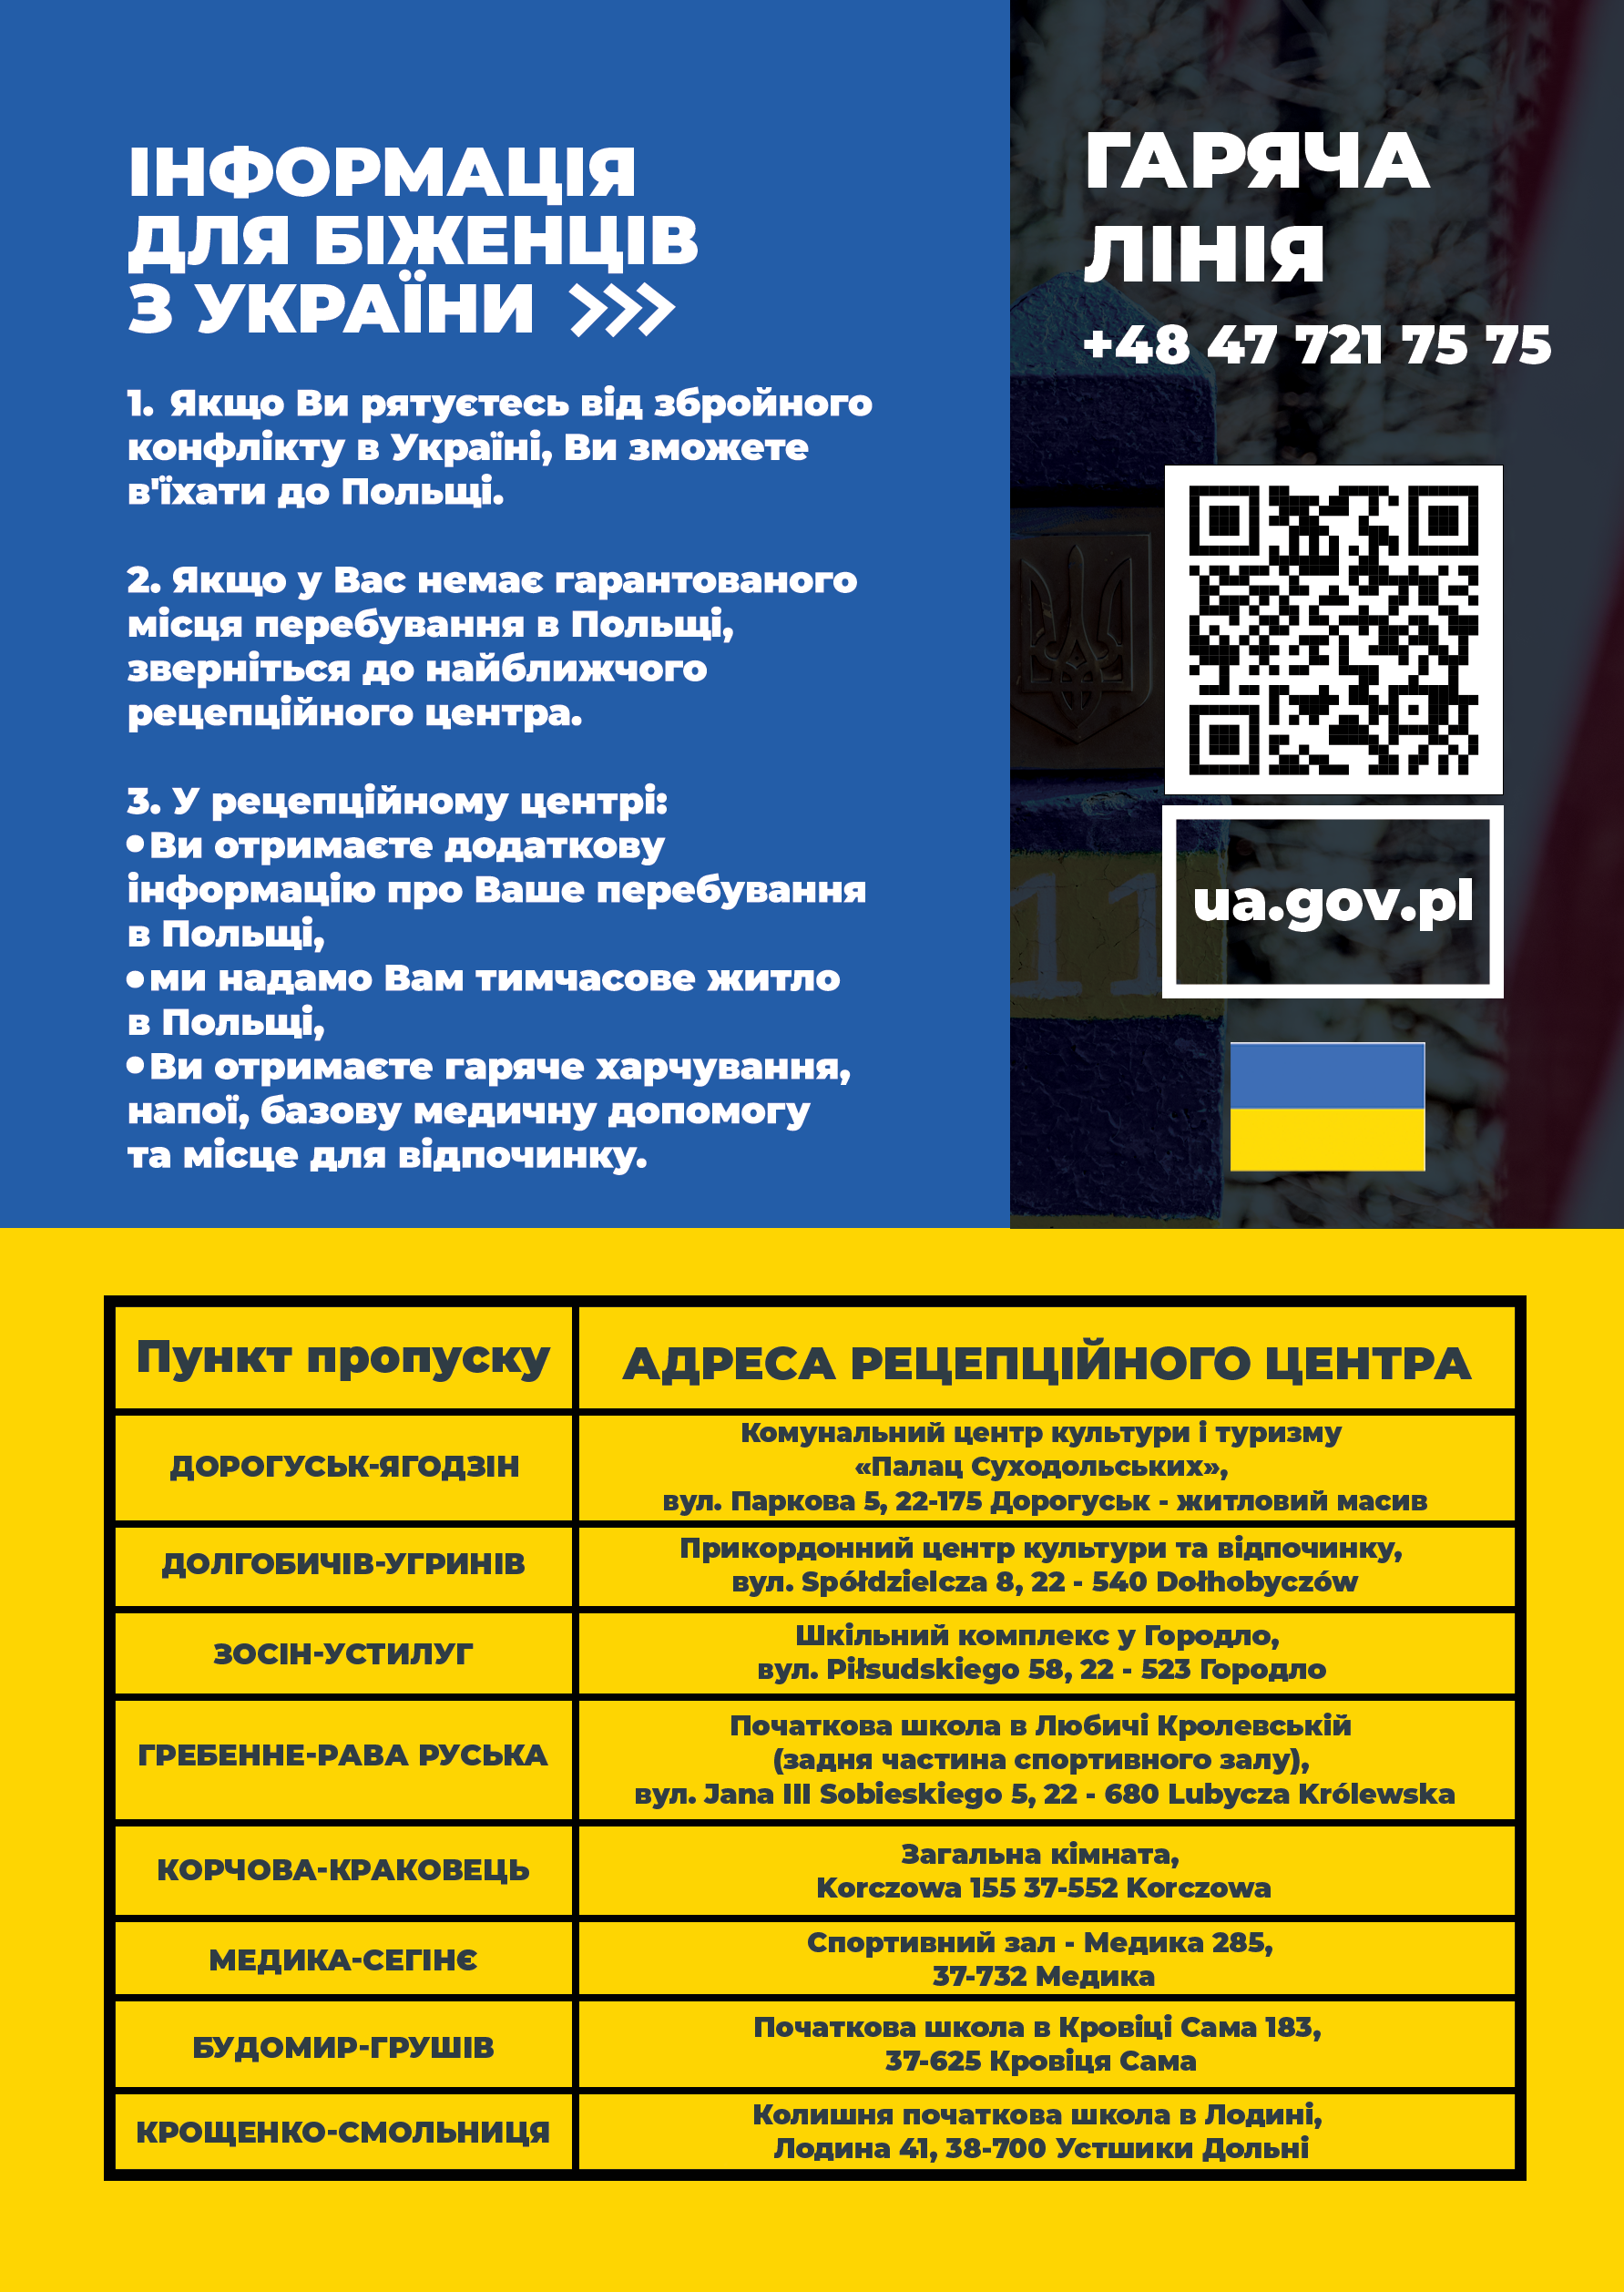 informacja w formie plakatu w języku ukraińskim